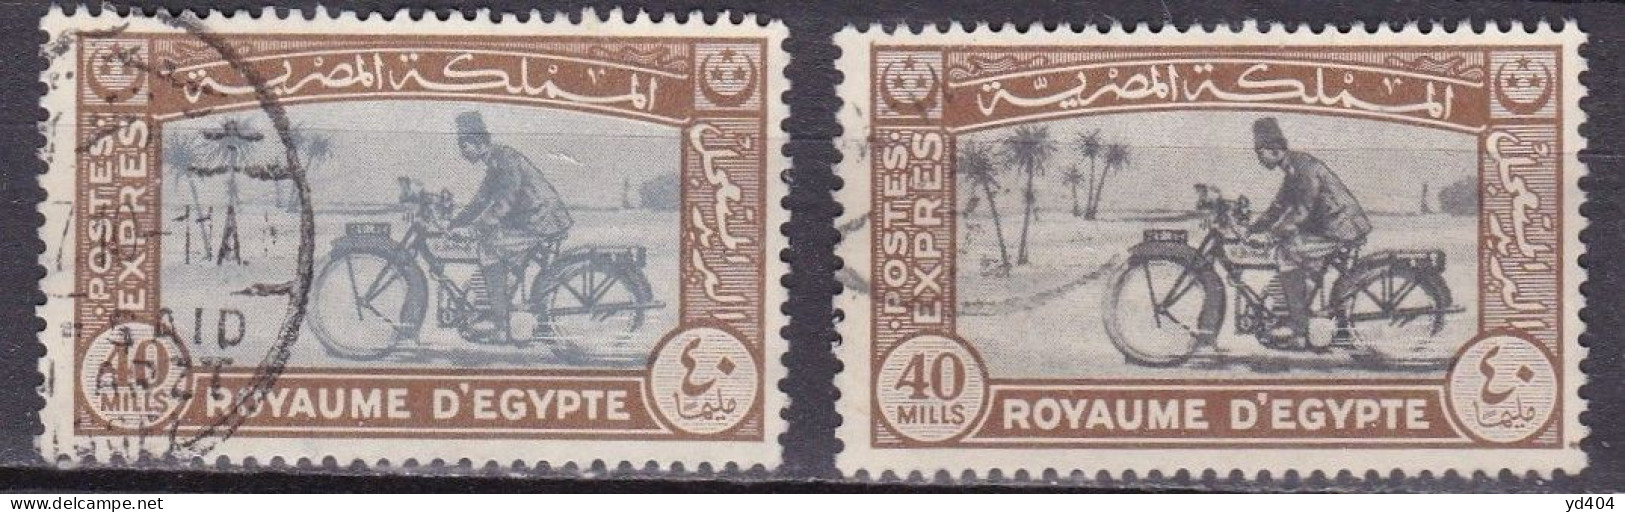 EG905 – EGYPTE – EGYPT – EXPRESS – 1944 – MOTORCYCLE POSTMAN – Y&T # 4(x2) USED 12 € - Gebruikt